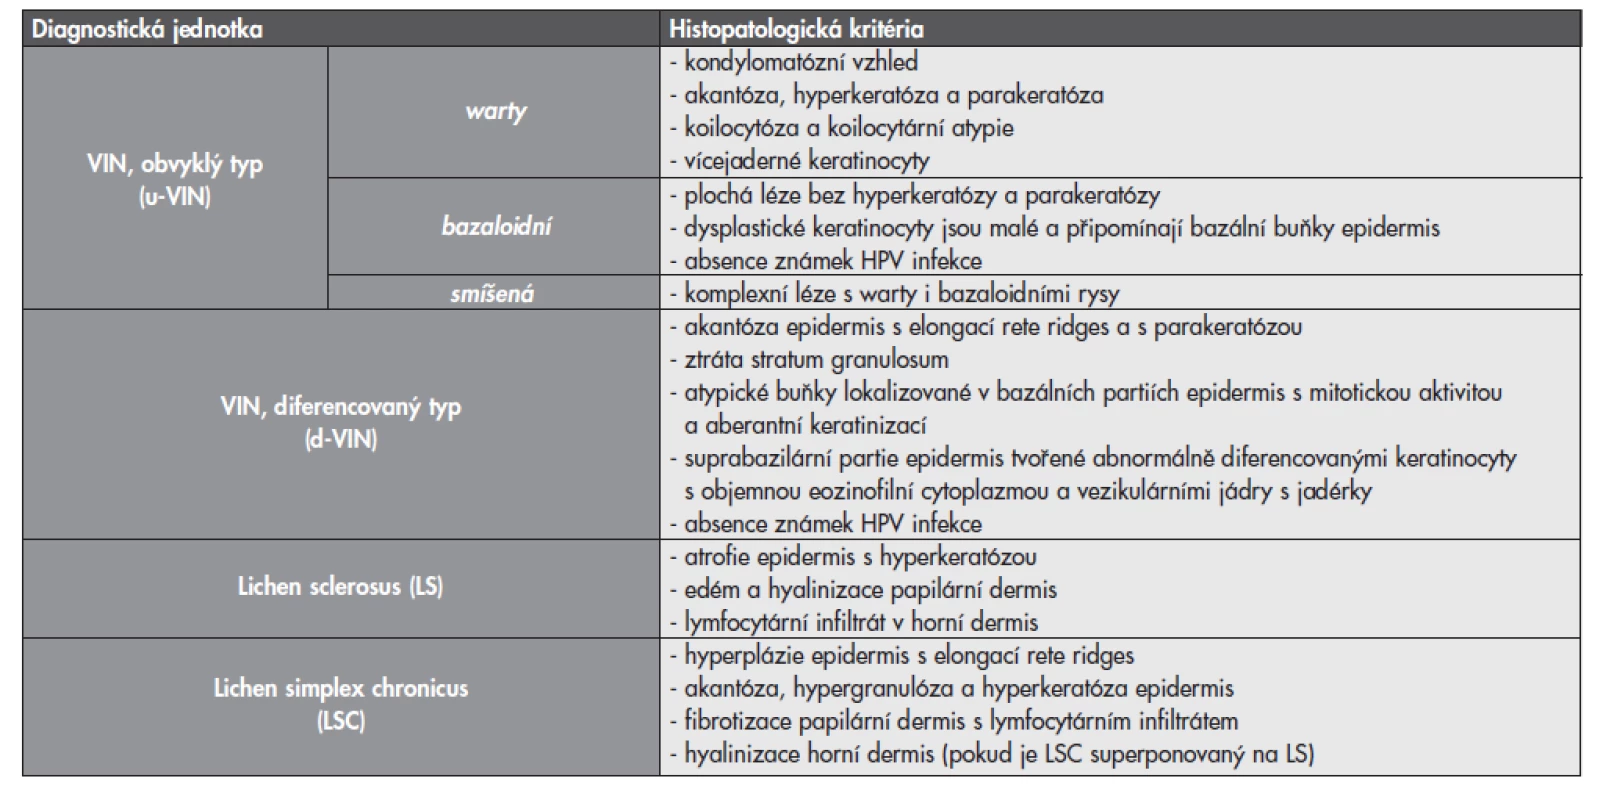 Základní histologické charakteristiky prekancerózních lézí vulvy a dalších asociovaných afekcí.